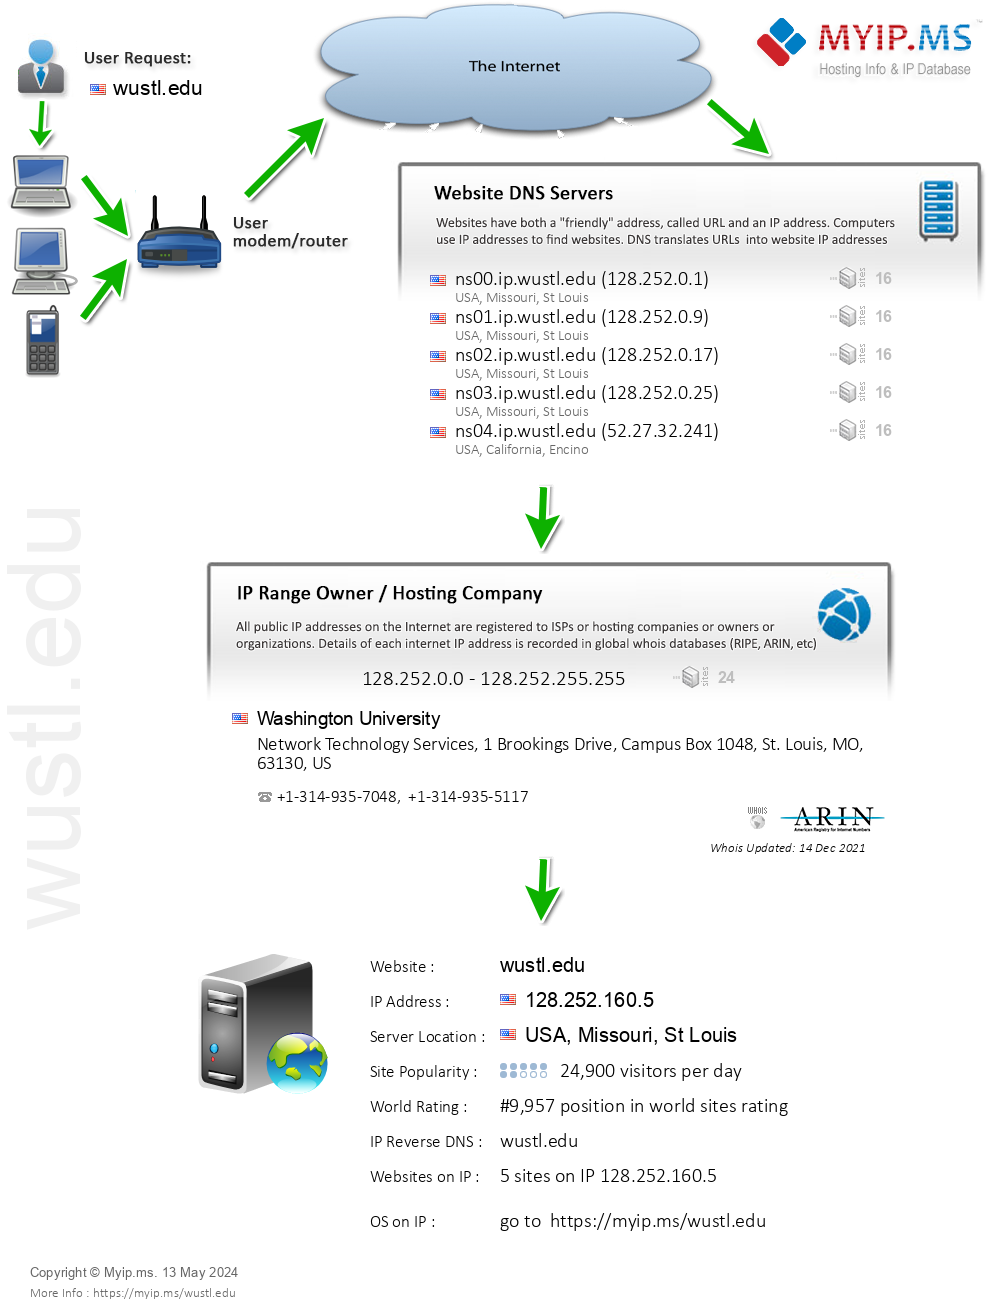 Wustl.edu - Website Hosting Visual IP Diagram